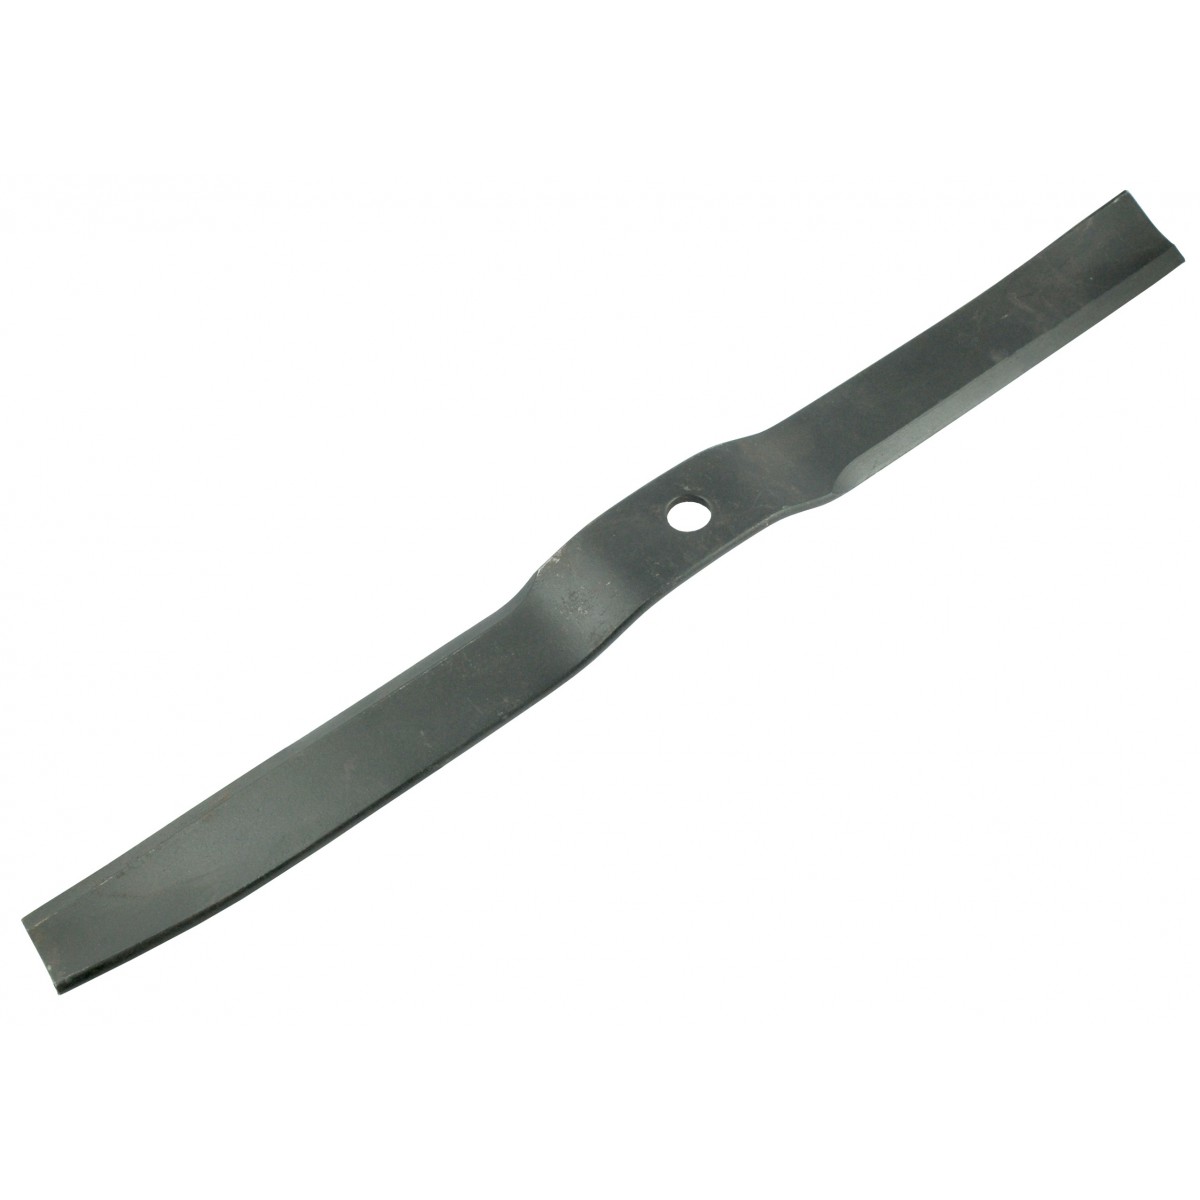 FM180 lawn mower knife 61 cm